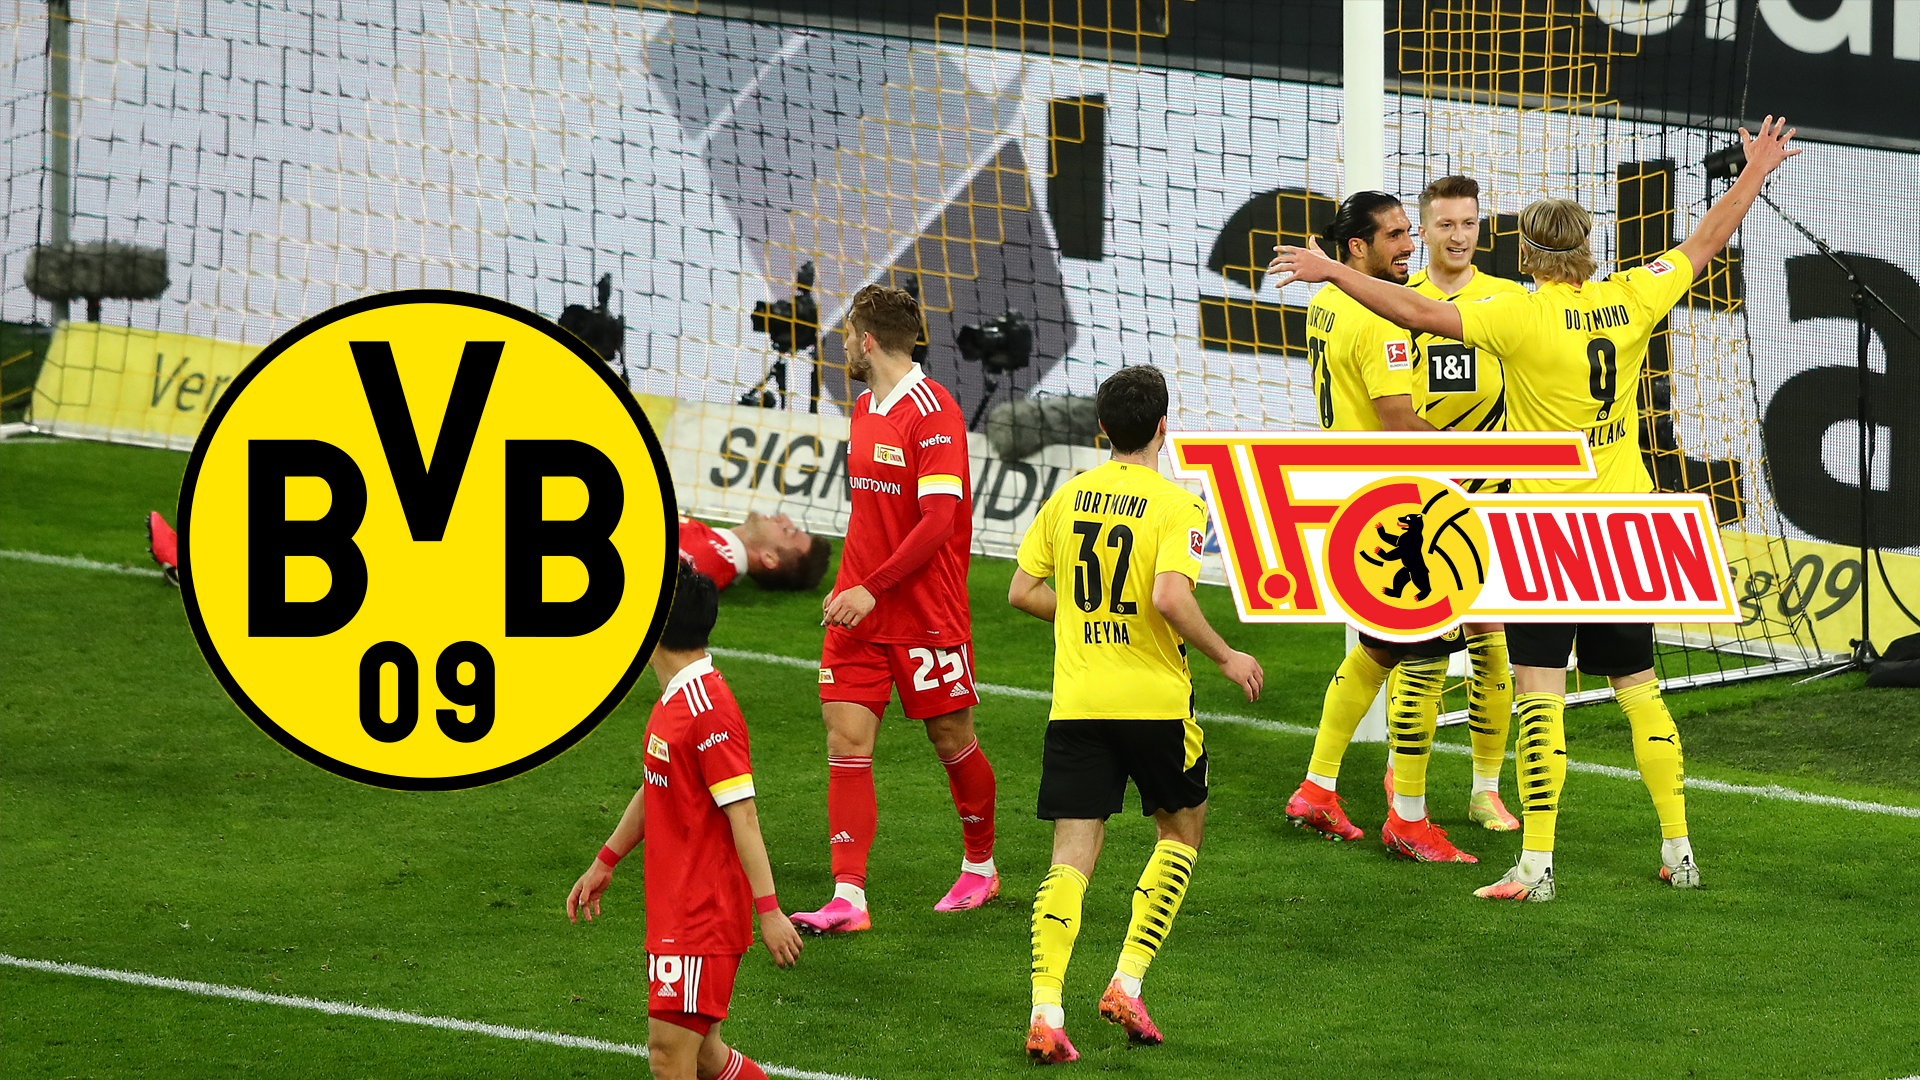 Darum zeigt Sky nicht BVB (Borussia Dortmund) vs